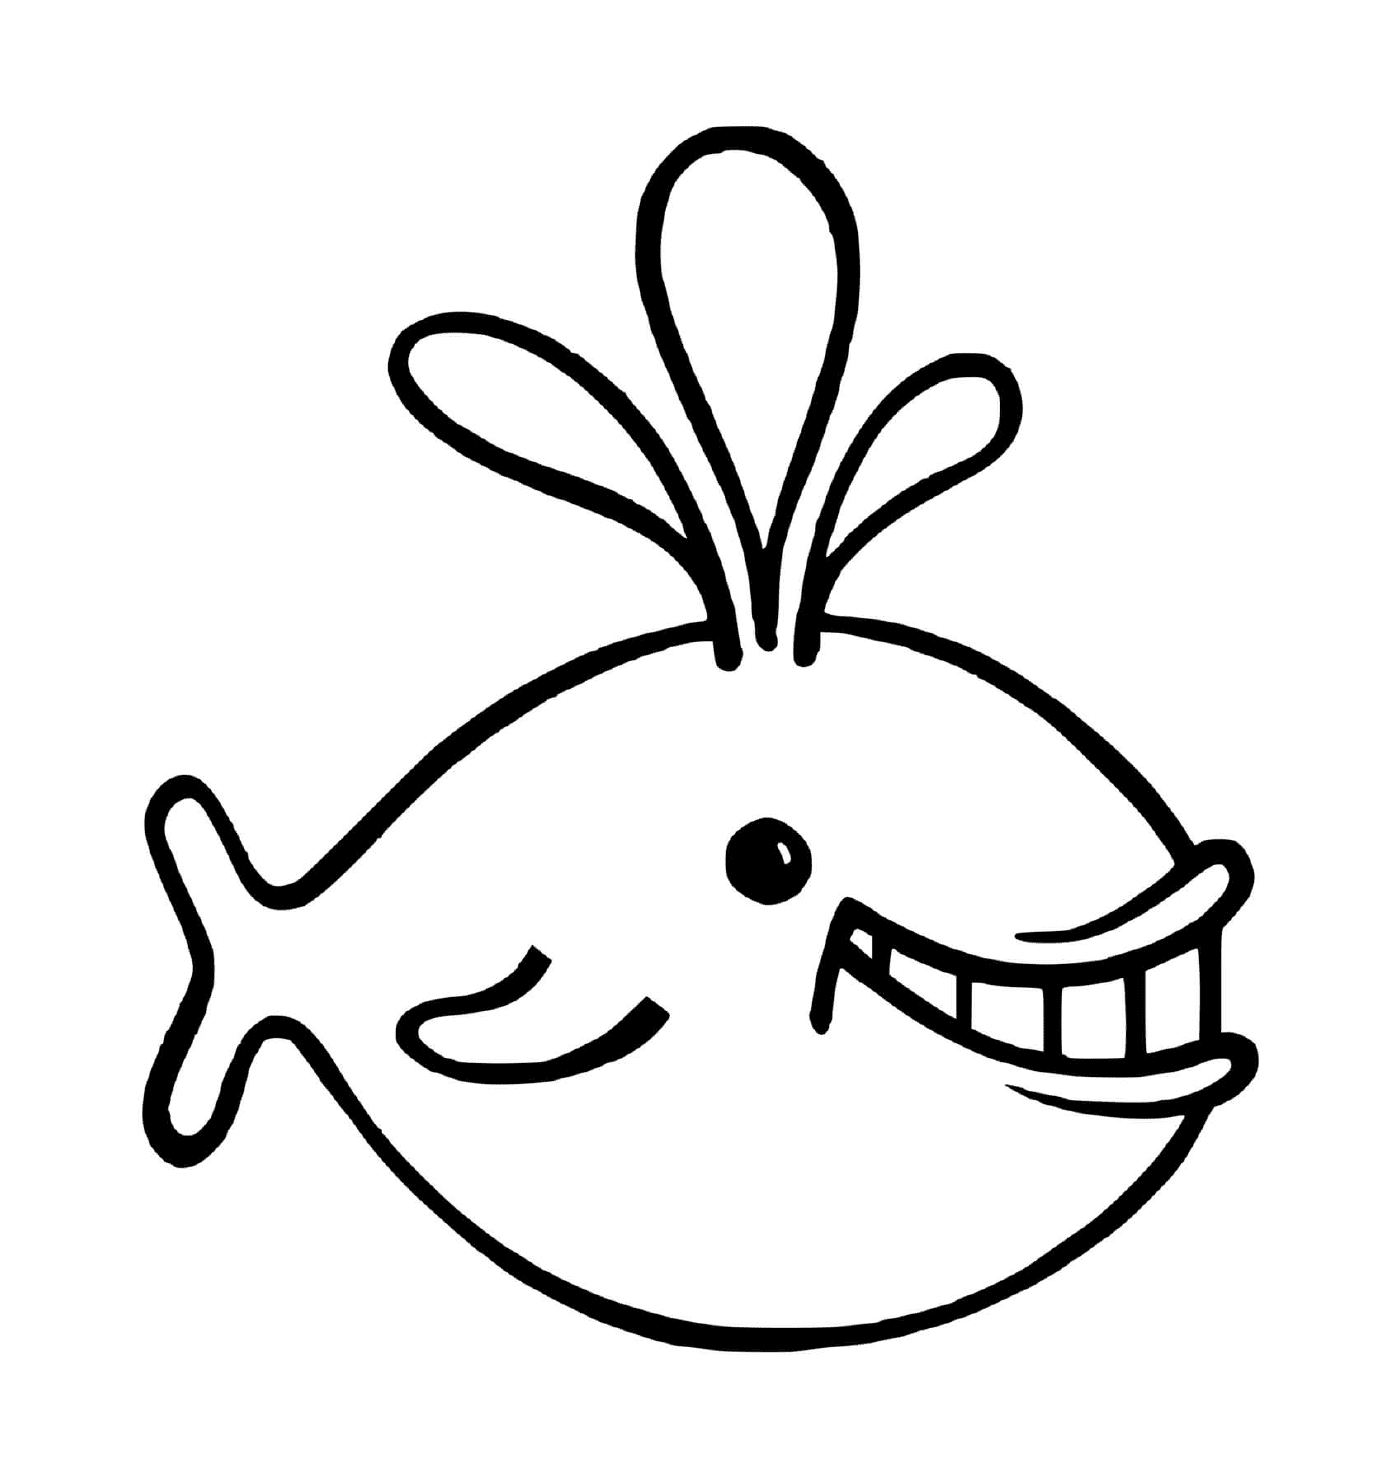  un pez con una gran sonrisa en la cara 